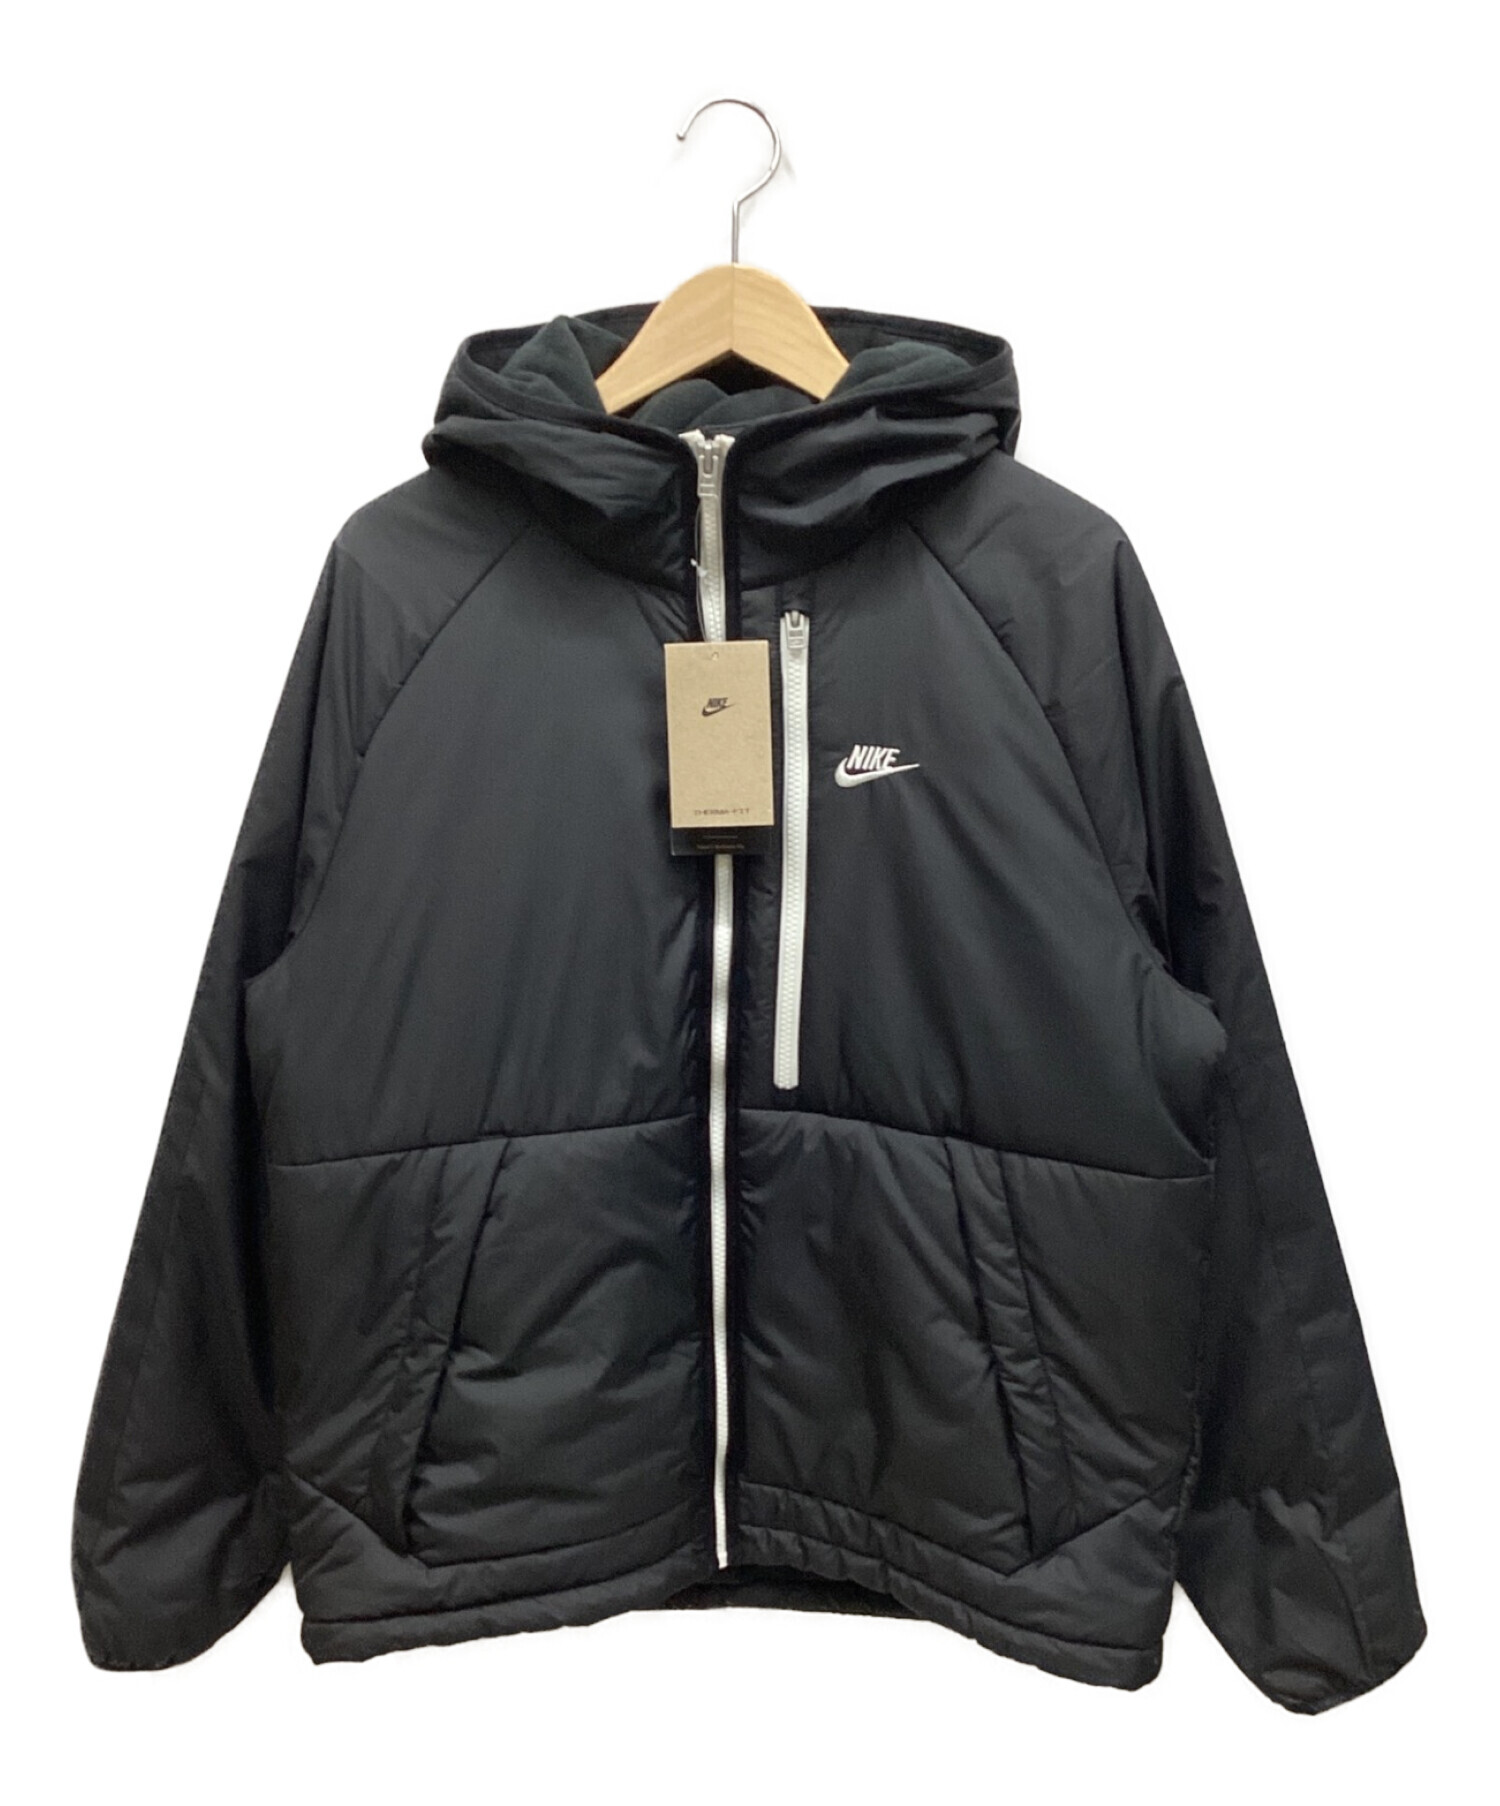 NIKE (ナイキ) フーデッドジャケット ブラック サイズ:L